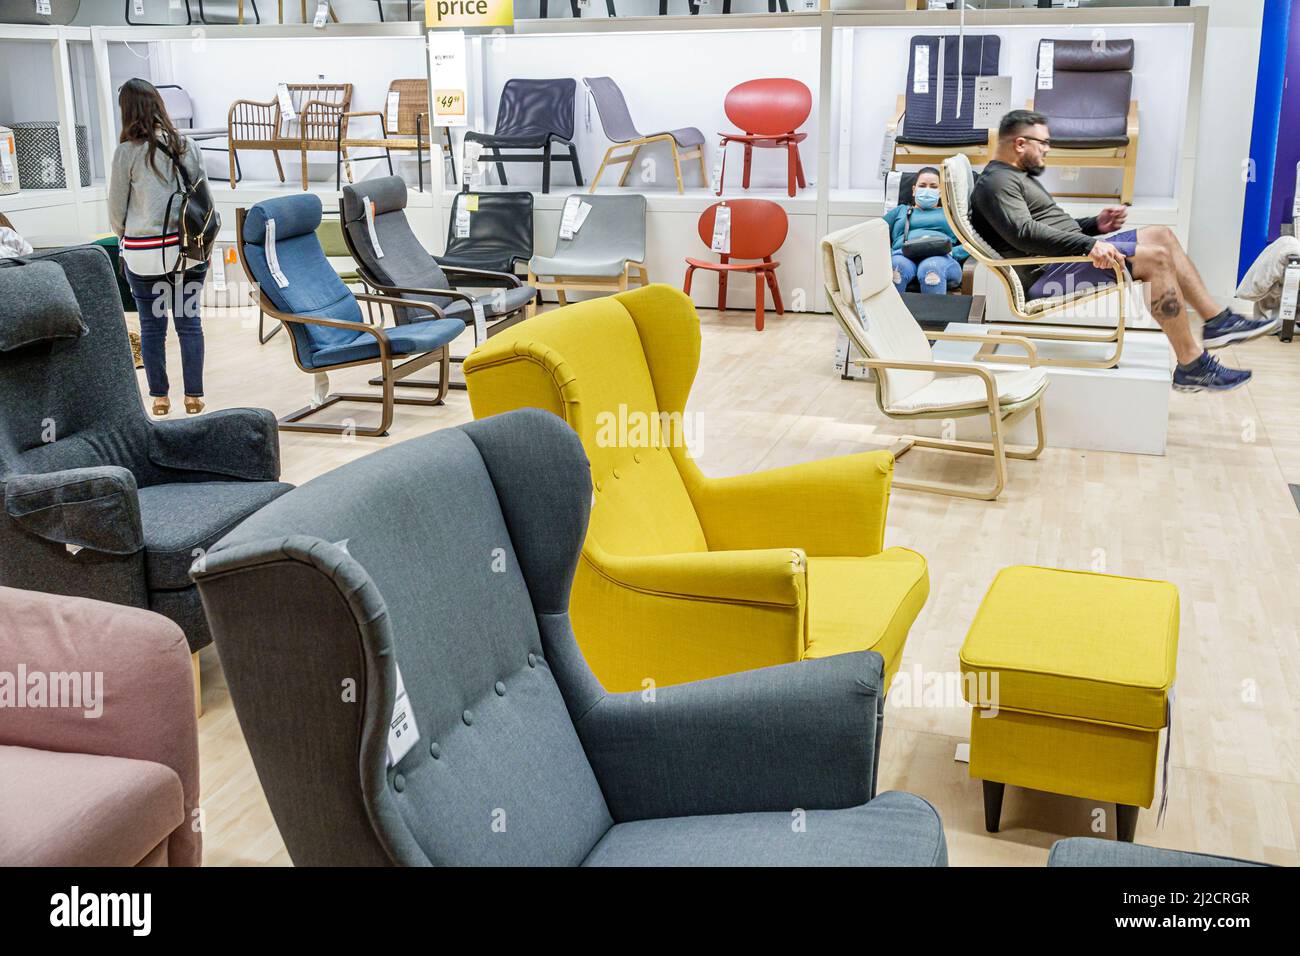 Miami Florida IKEA maison biens meubles accessoires meubles décor shopping à l'intérieur exposition d'intérieur chaises de vente Banque D'Images